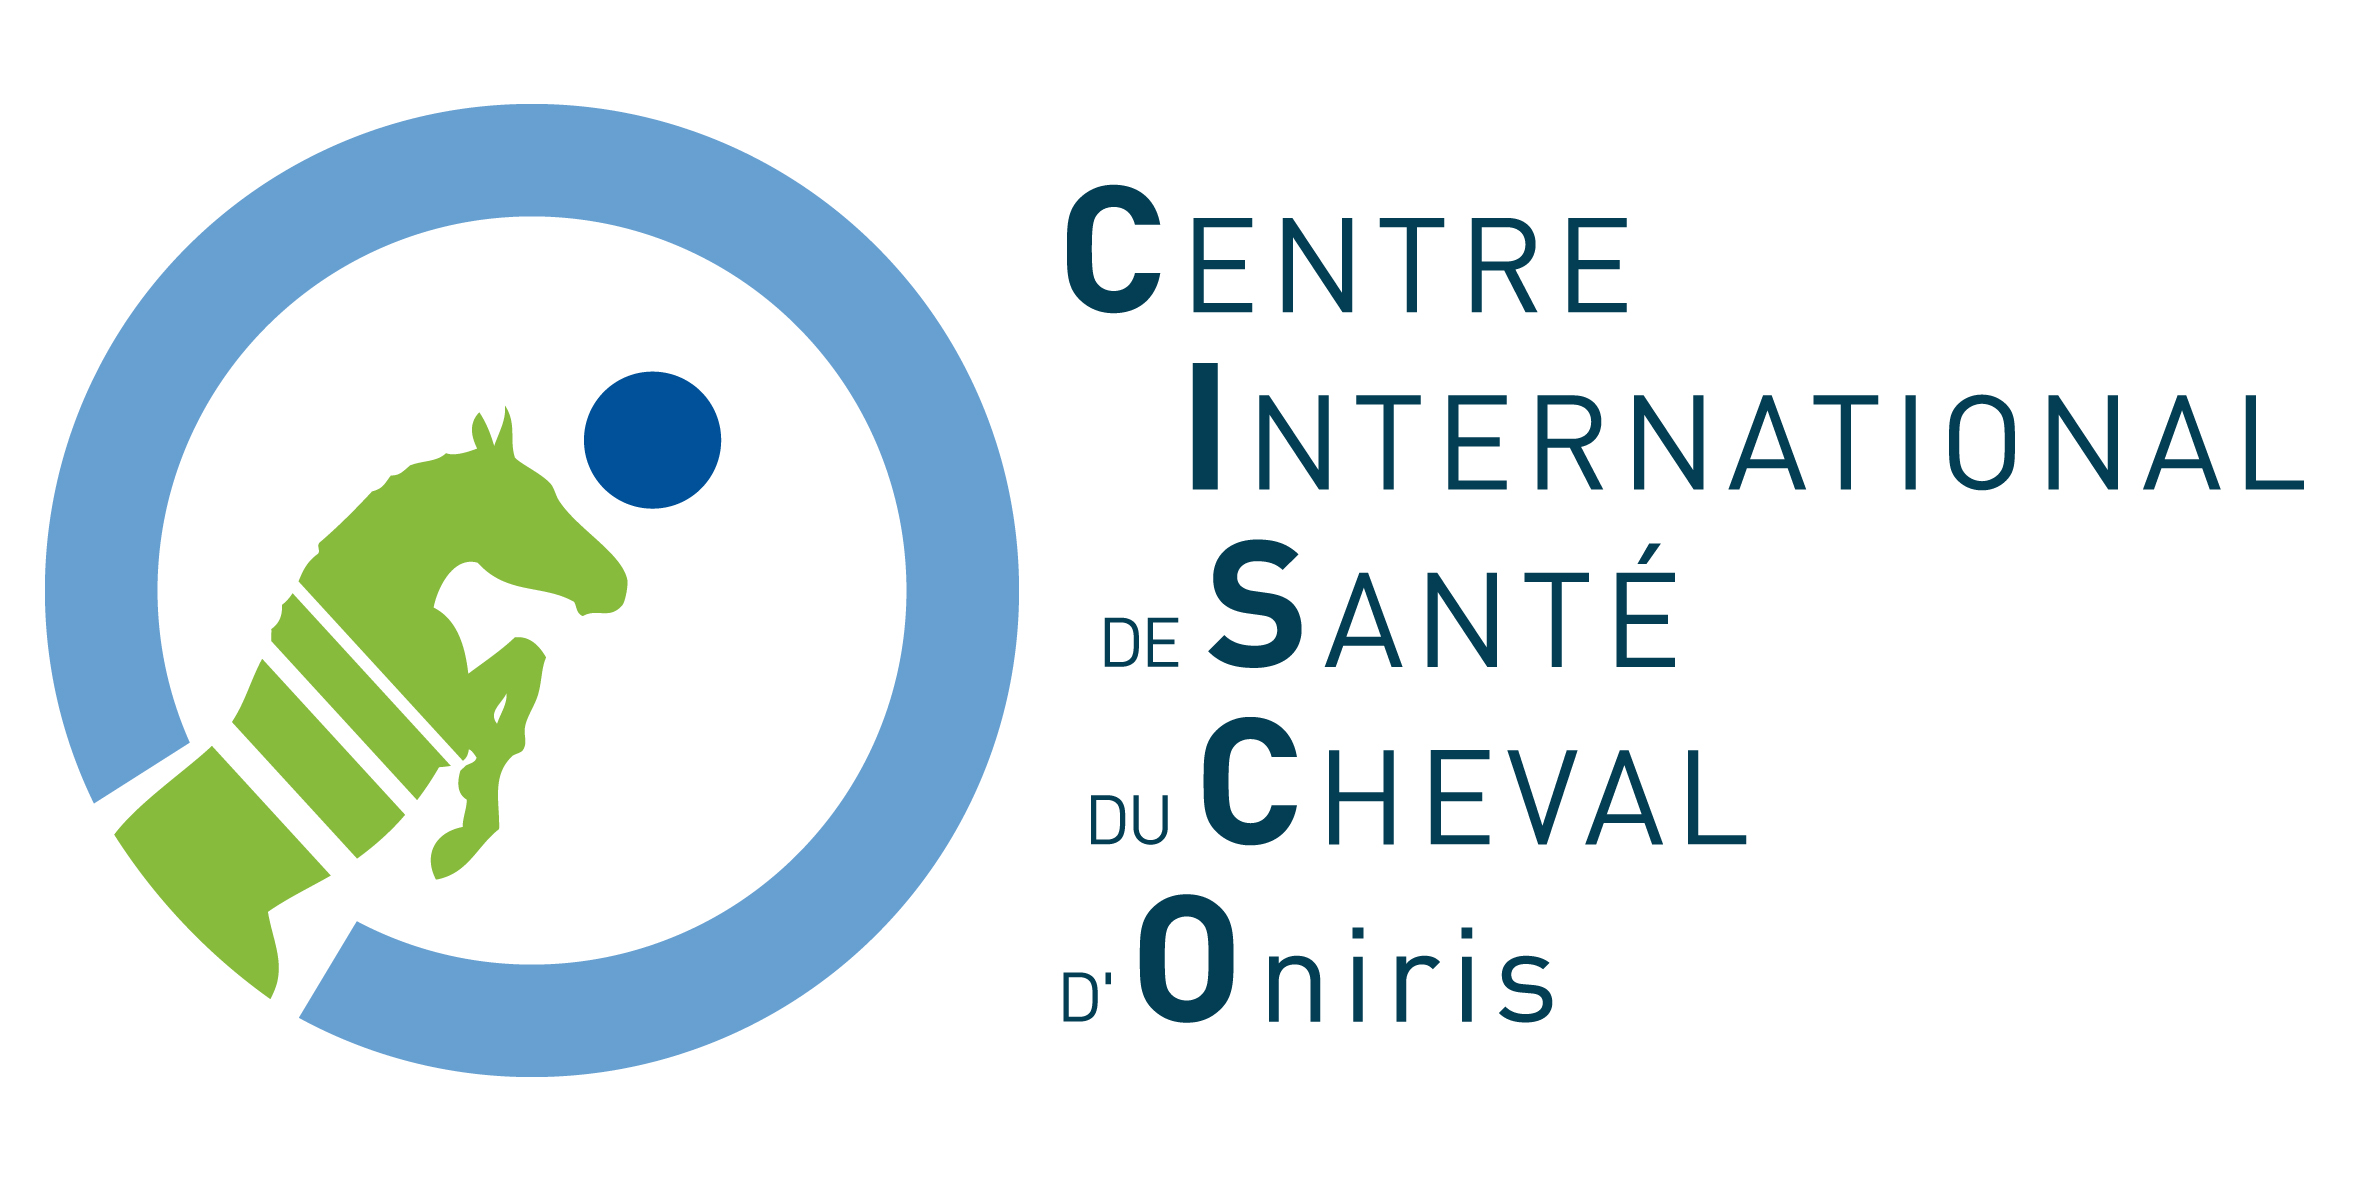 Centre International de Santé du Cheval d'Oniris